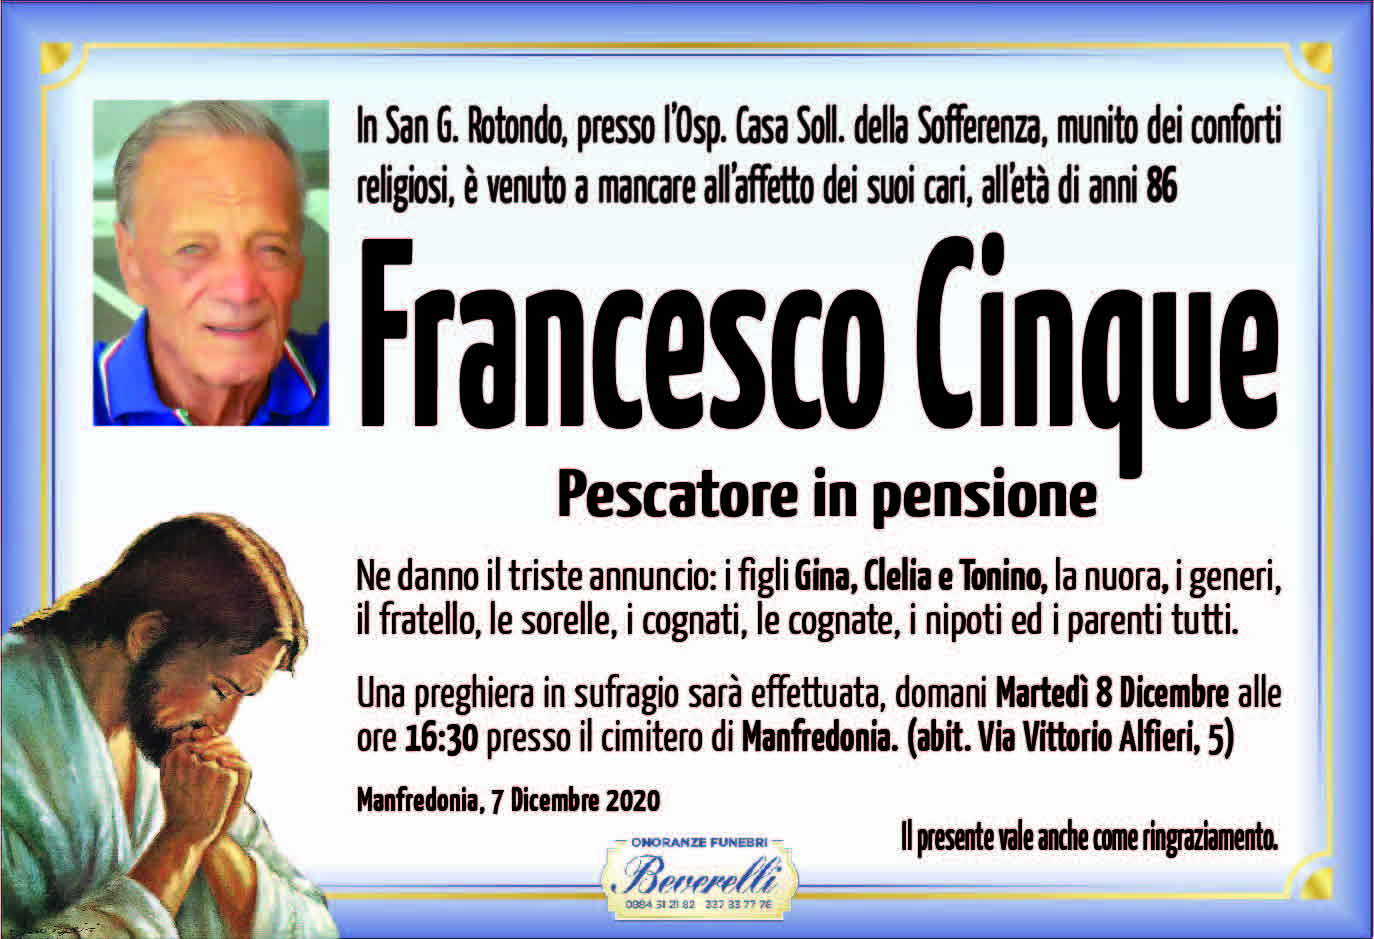 Francesco Cinque